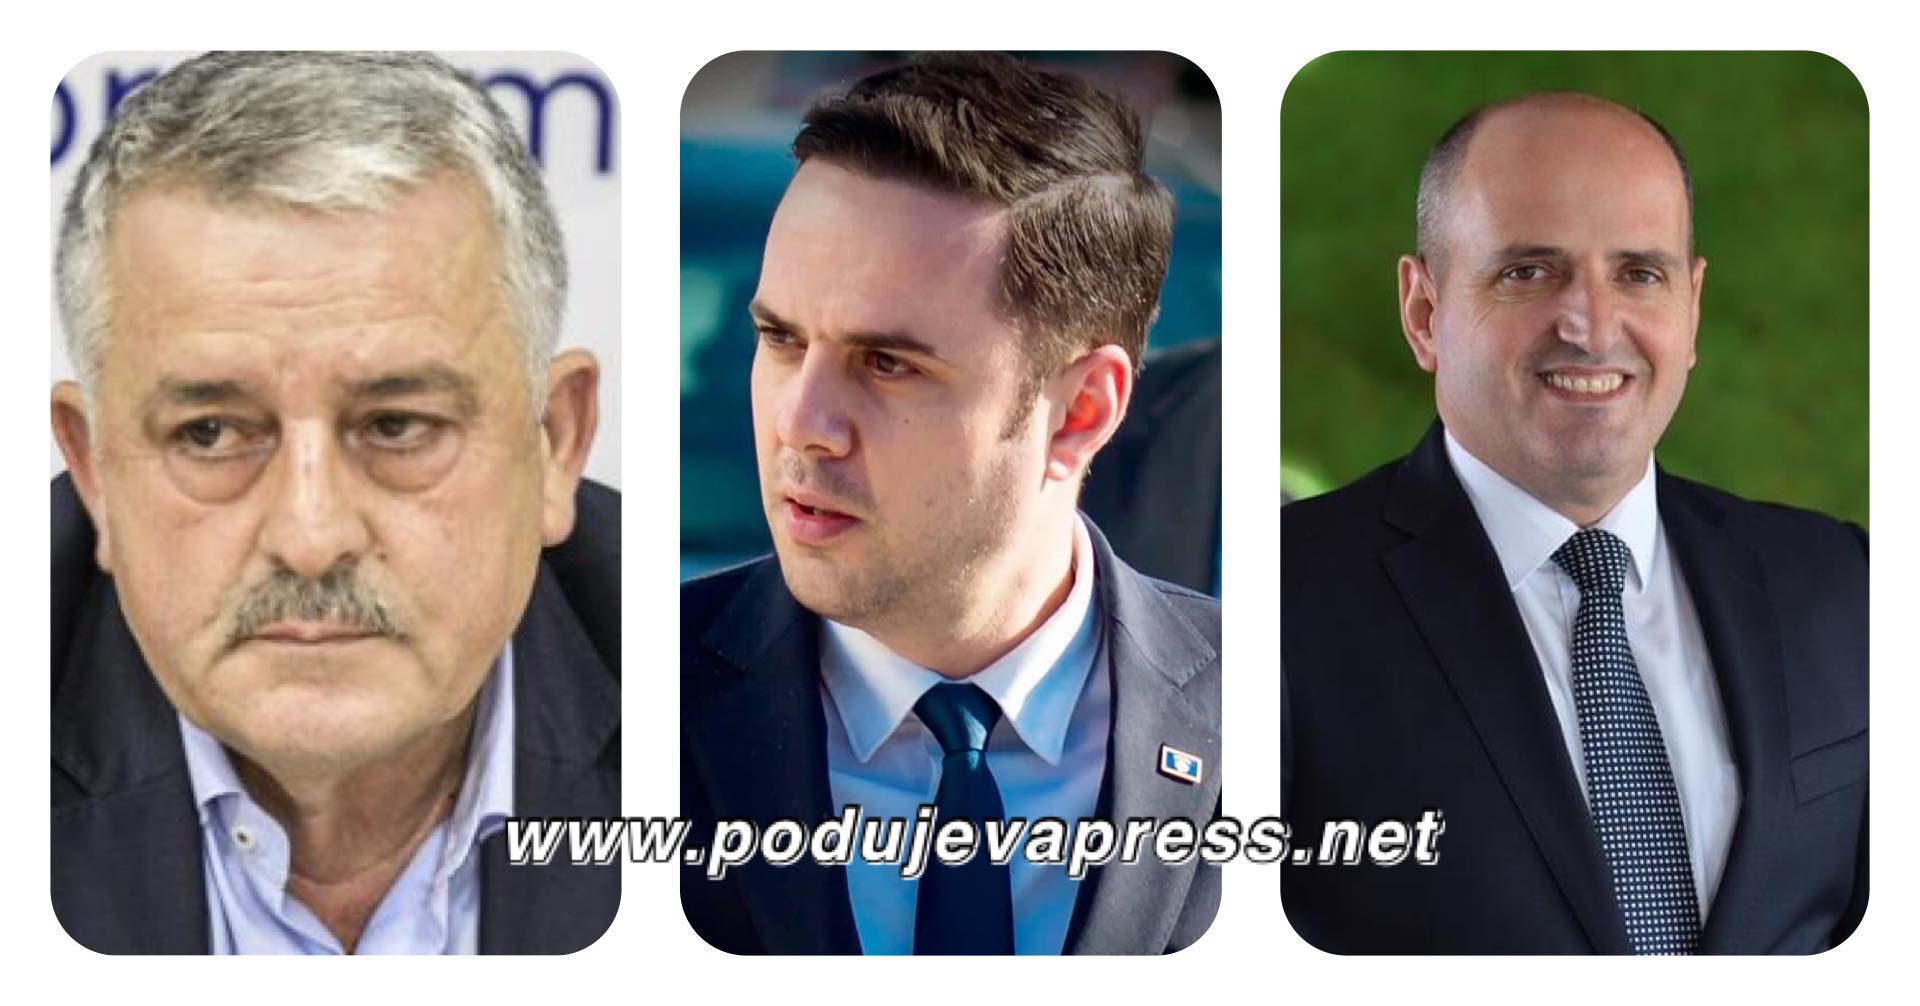  Cili është kryetar i degës së LDK-së në Podujevë?! Agim Veliu e Ekrem Hyseni i referohen vetes si kryetar dege